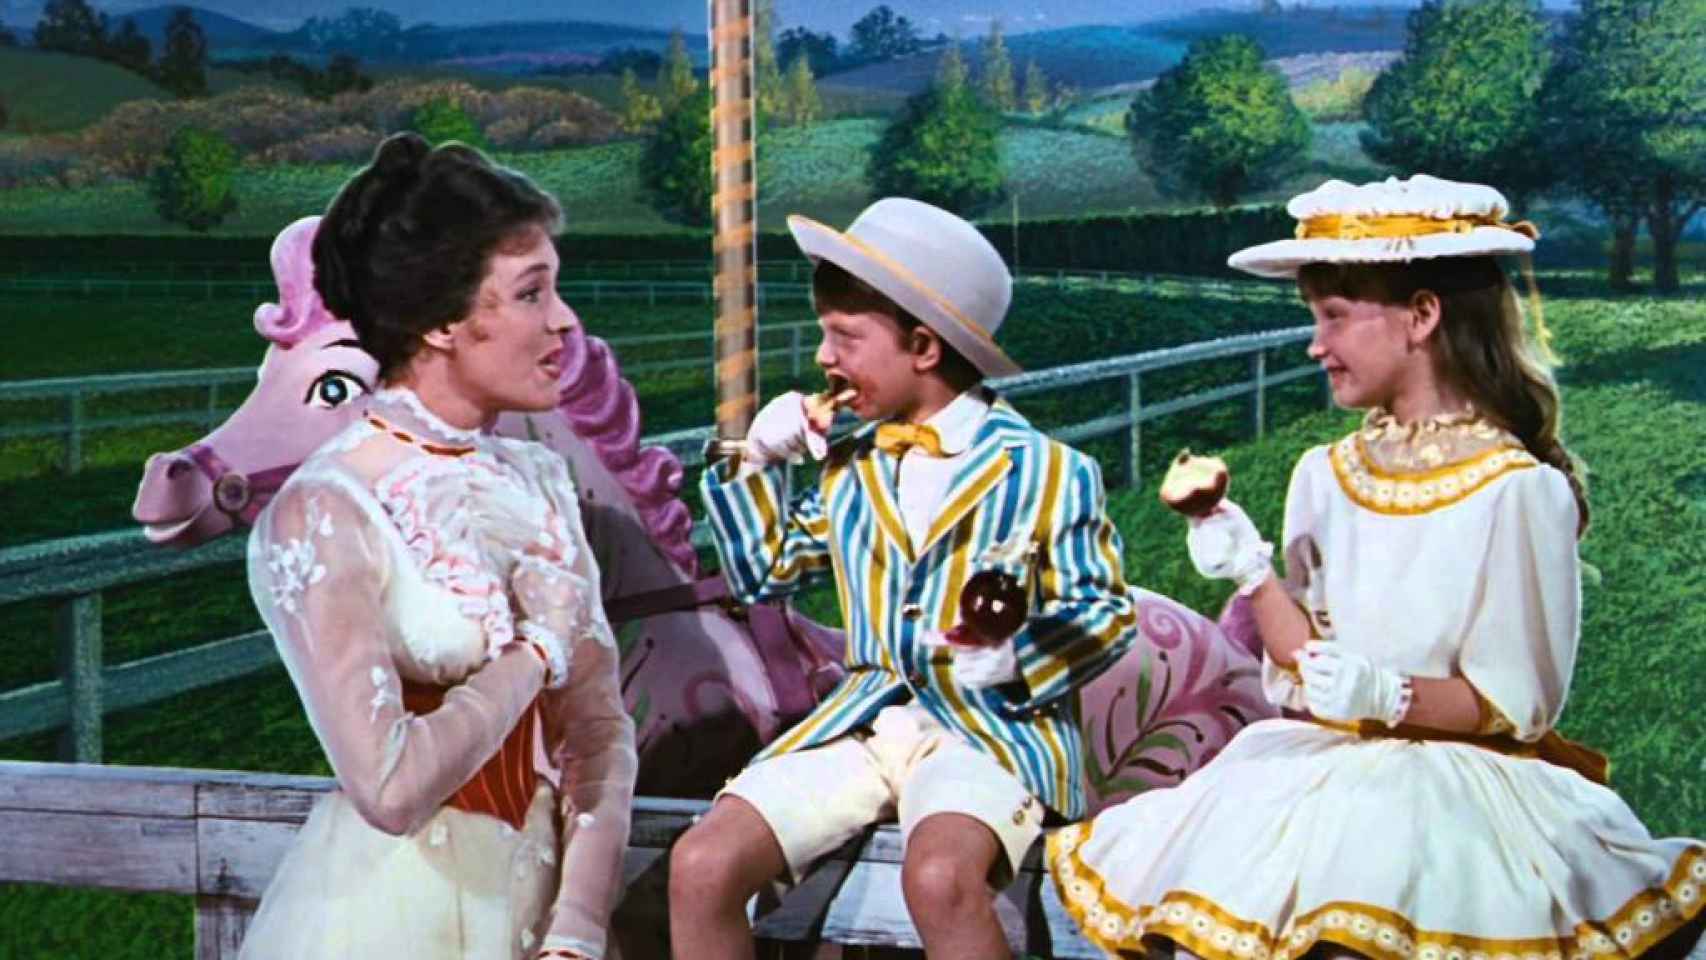 Fotograma de Mary Poppins, la niñera entregada a que los niños no se aburrieran en la ausencia de sus padres.